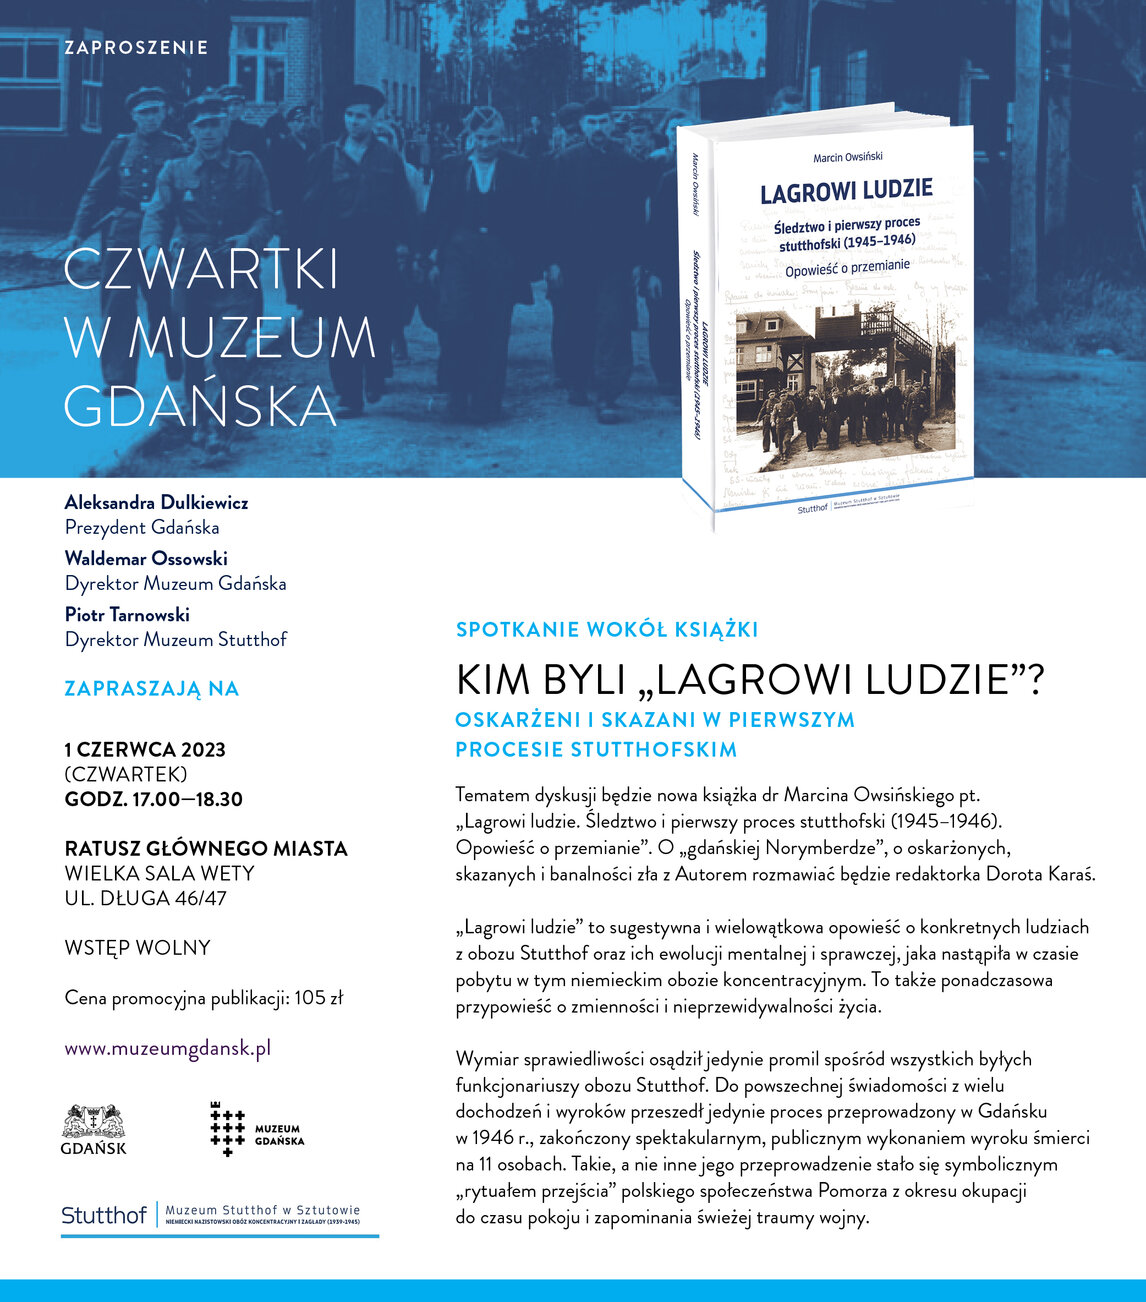 Zaproszenie promocja Lagrowi ludzie Muzeum Gdańska